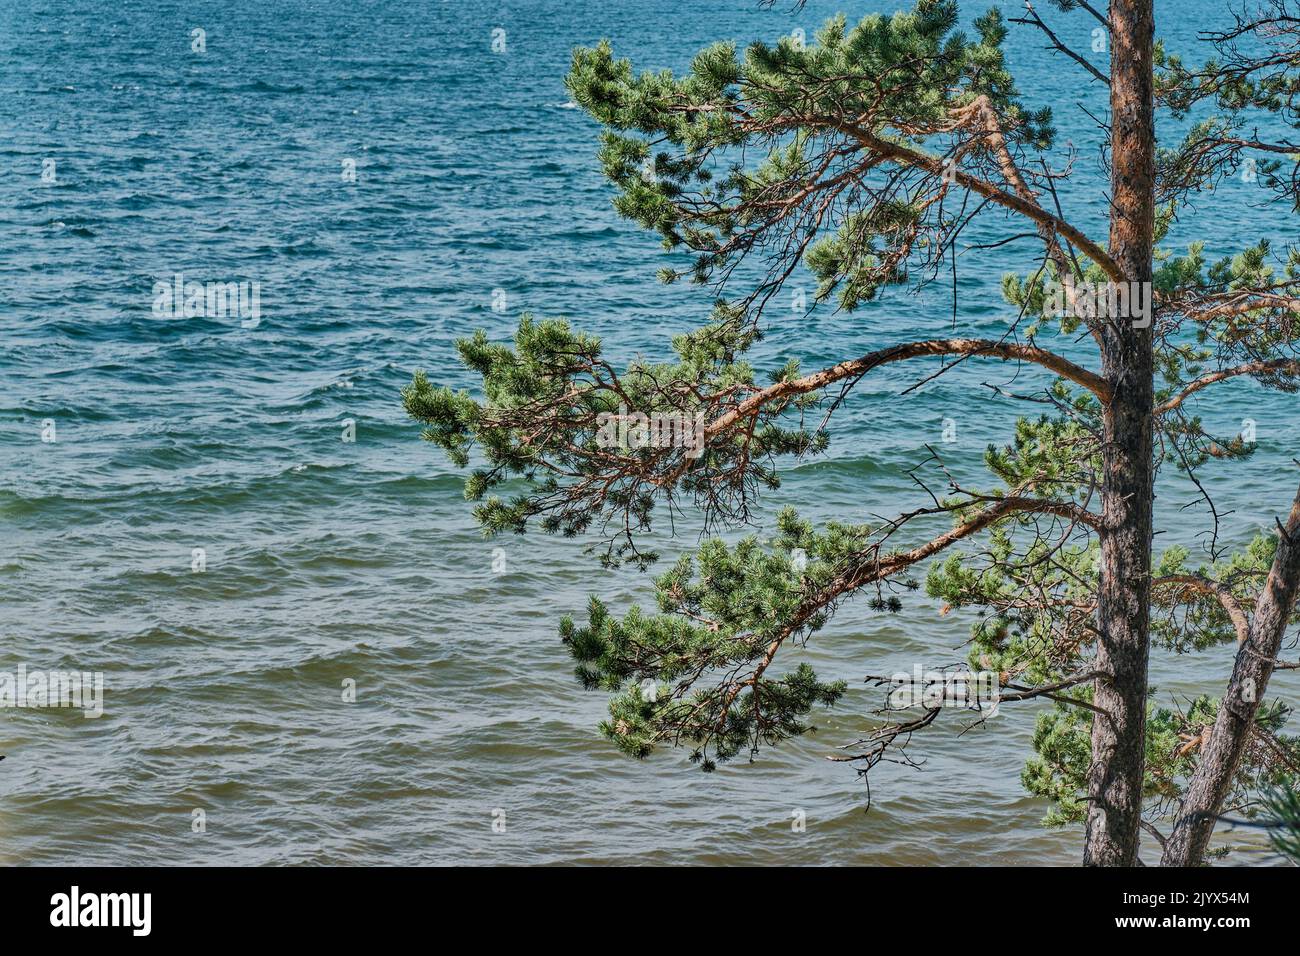 Des branches de pins sont en gros plan sur le fond de la baie Barguzinsky du lac Baikal. Banque D'Images